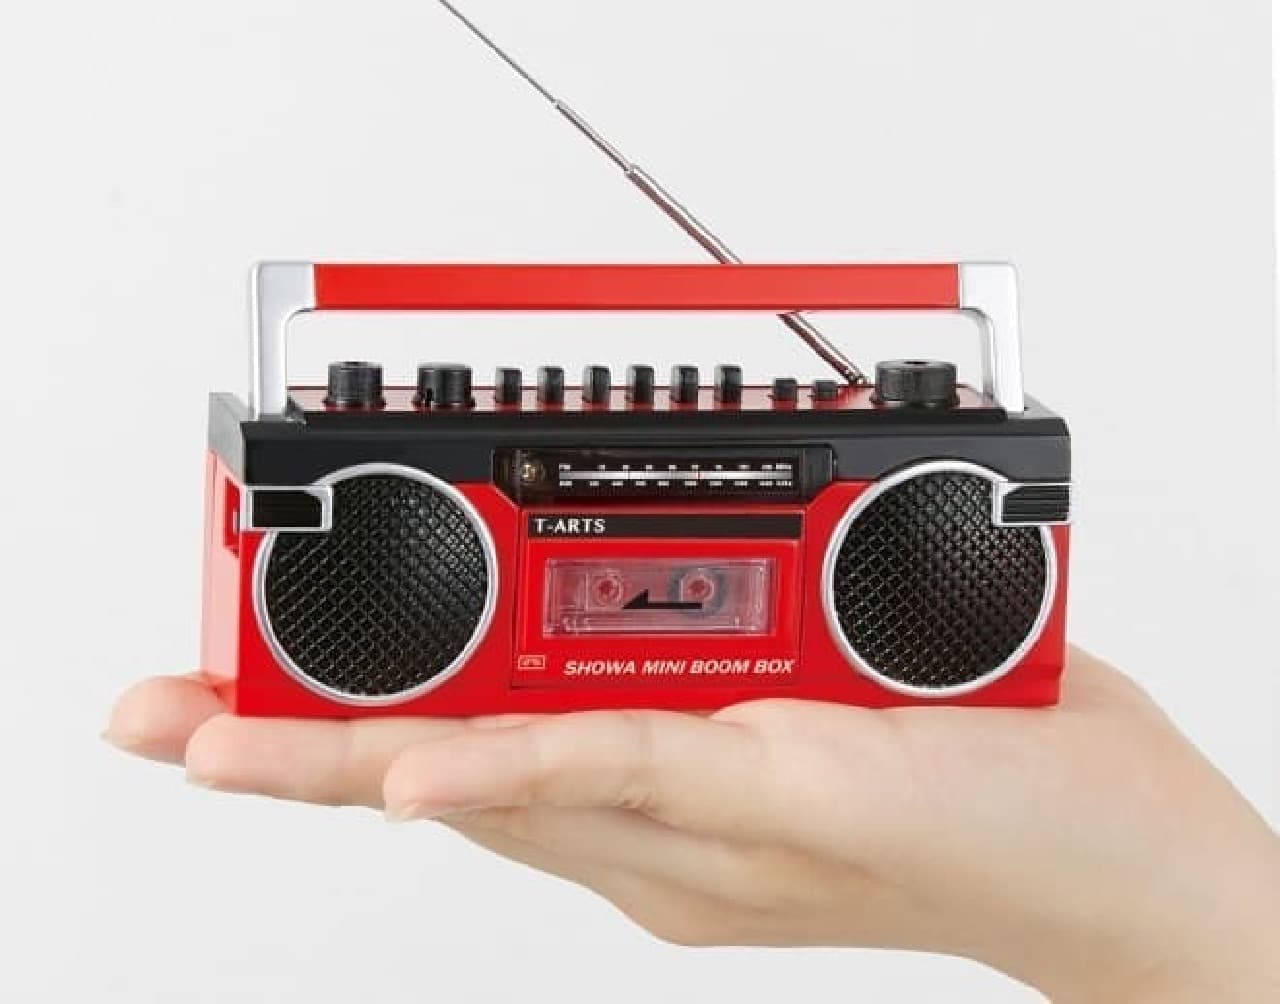 小さいけど、録音できる本物のラジカセ「昭和ミニラジカセ」2月28日発売－AM・FMのラジオも聞けます